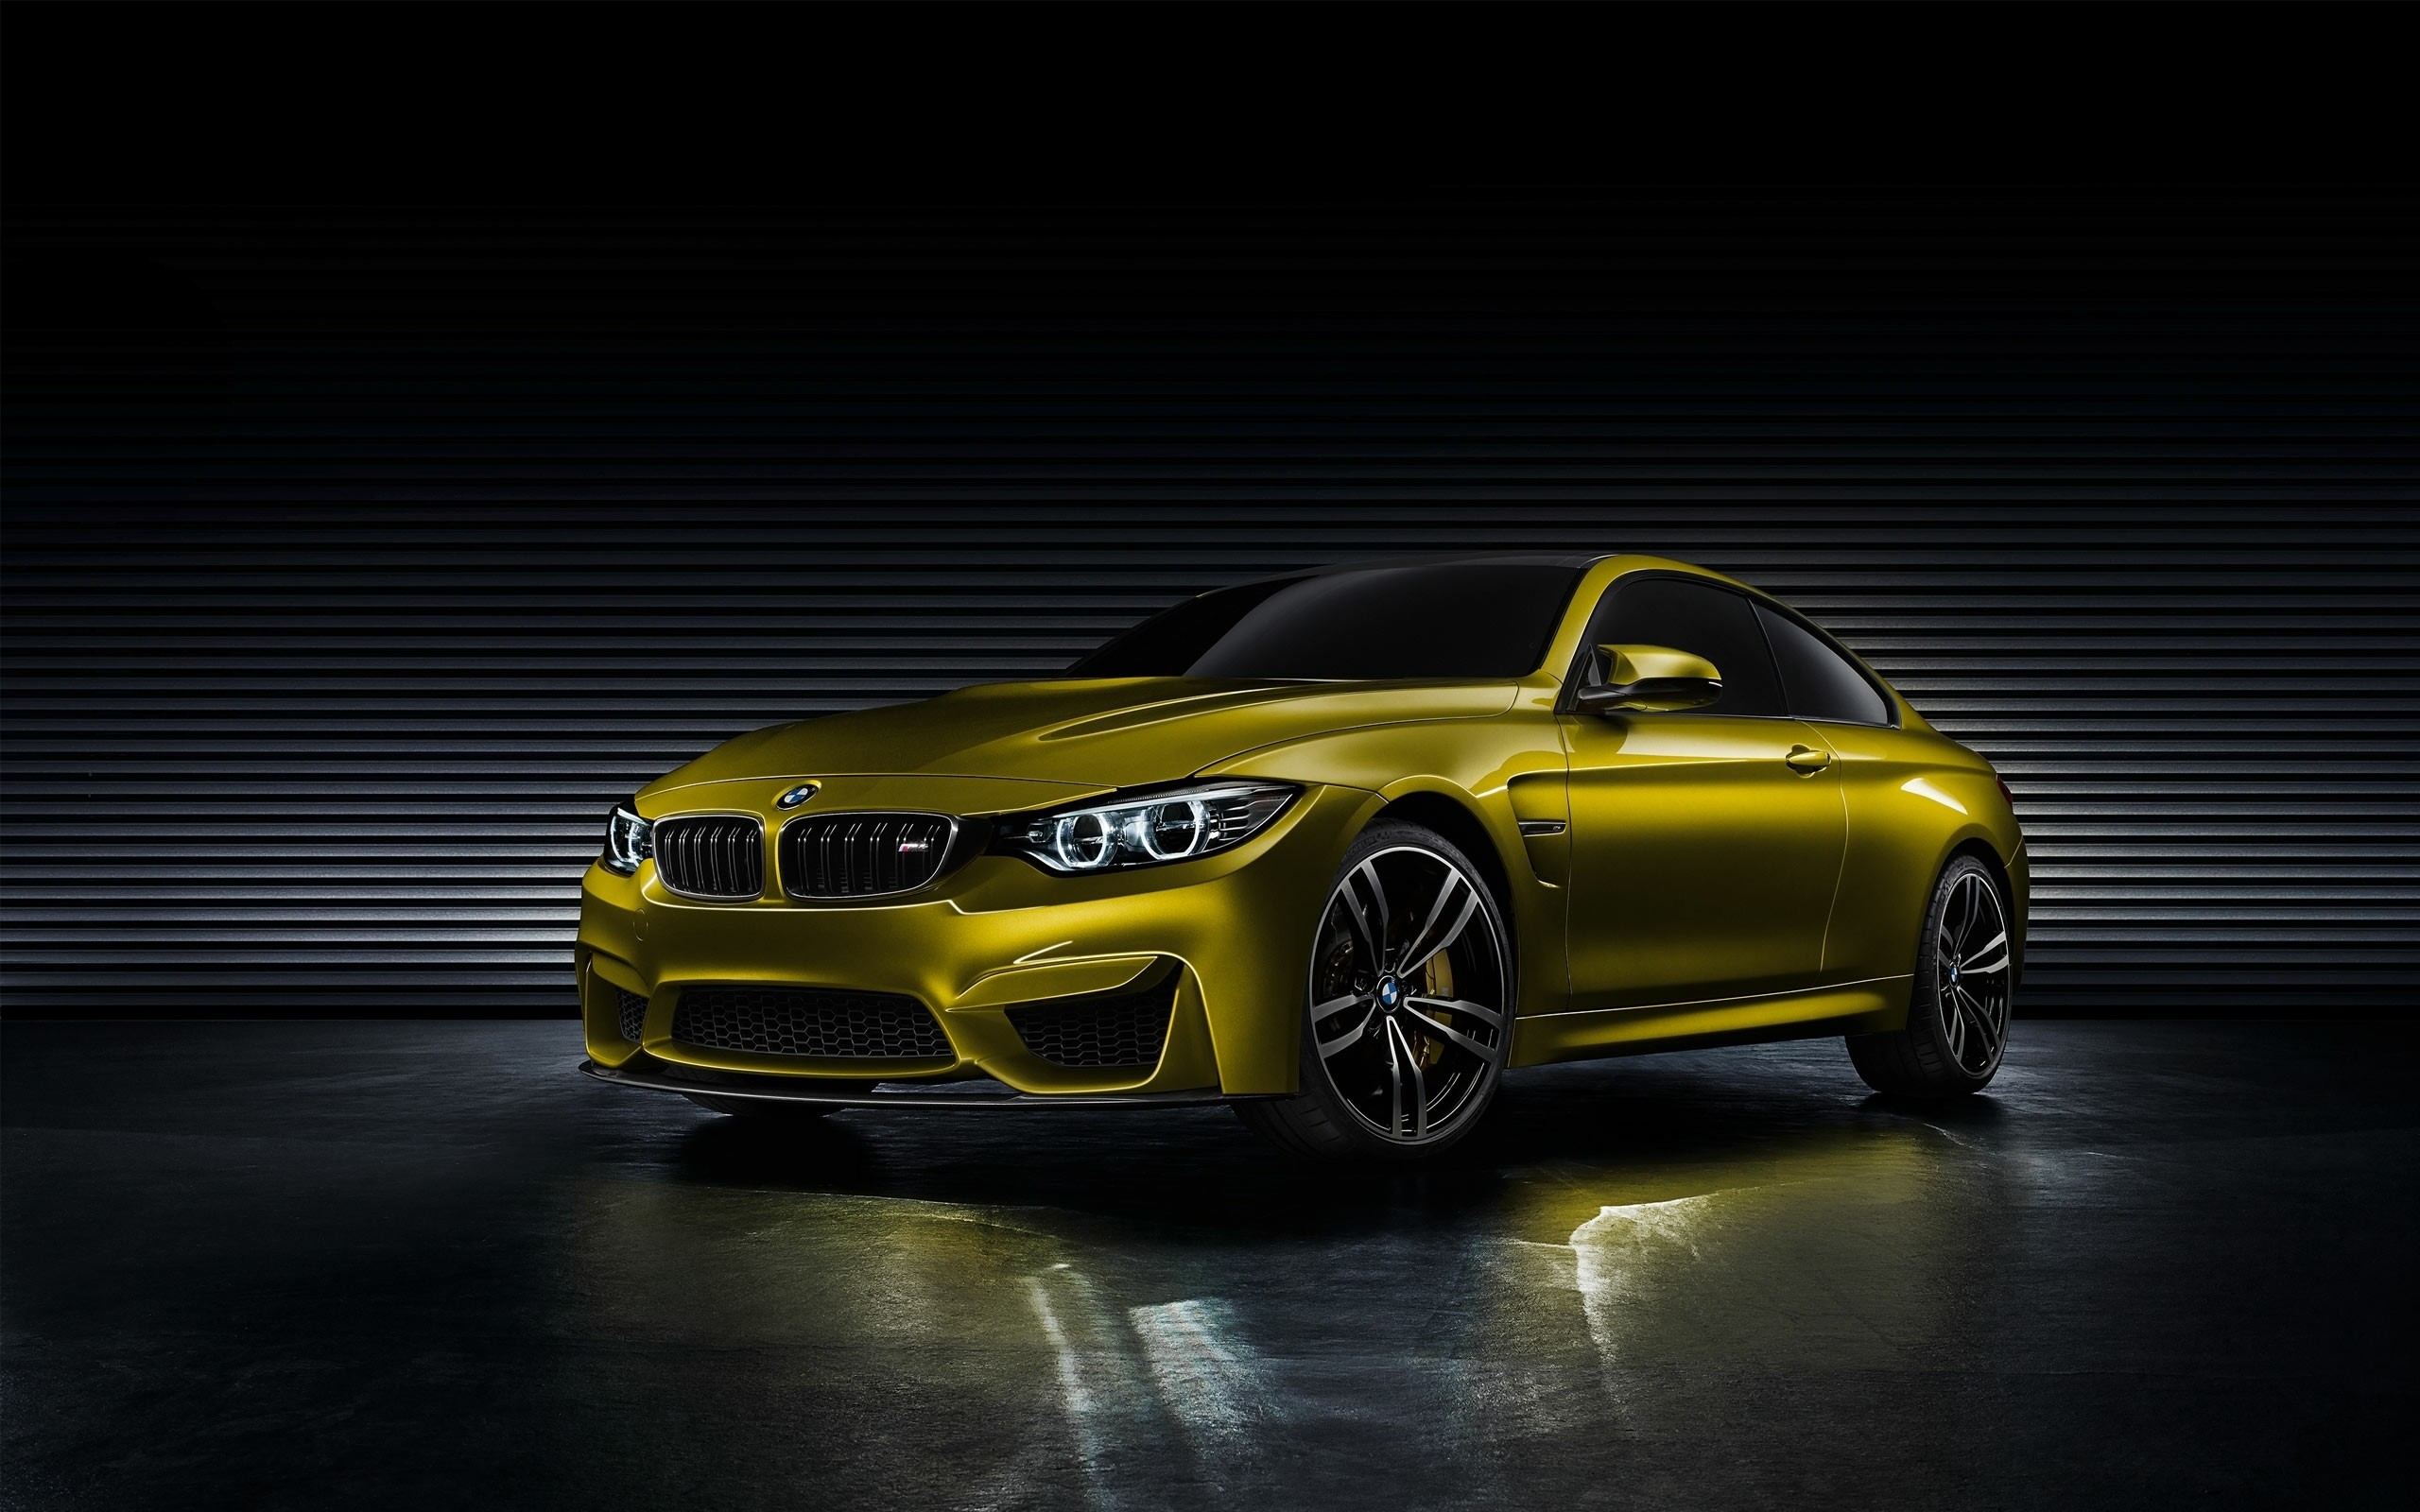 2560x1600 BMW M4 HD Wallpaper | Hintergrund |  | ID:472428 - Wallpaper Abyss